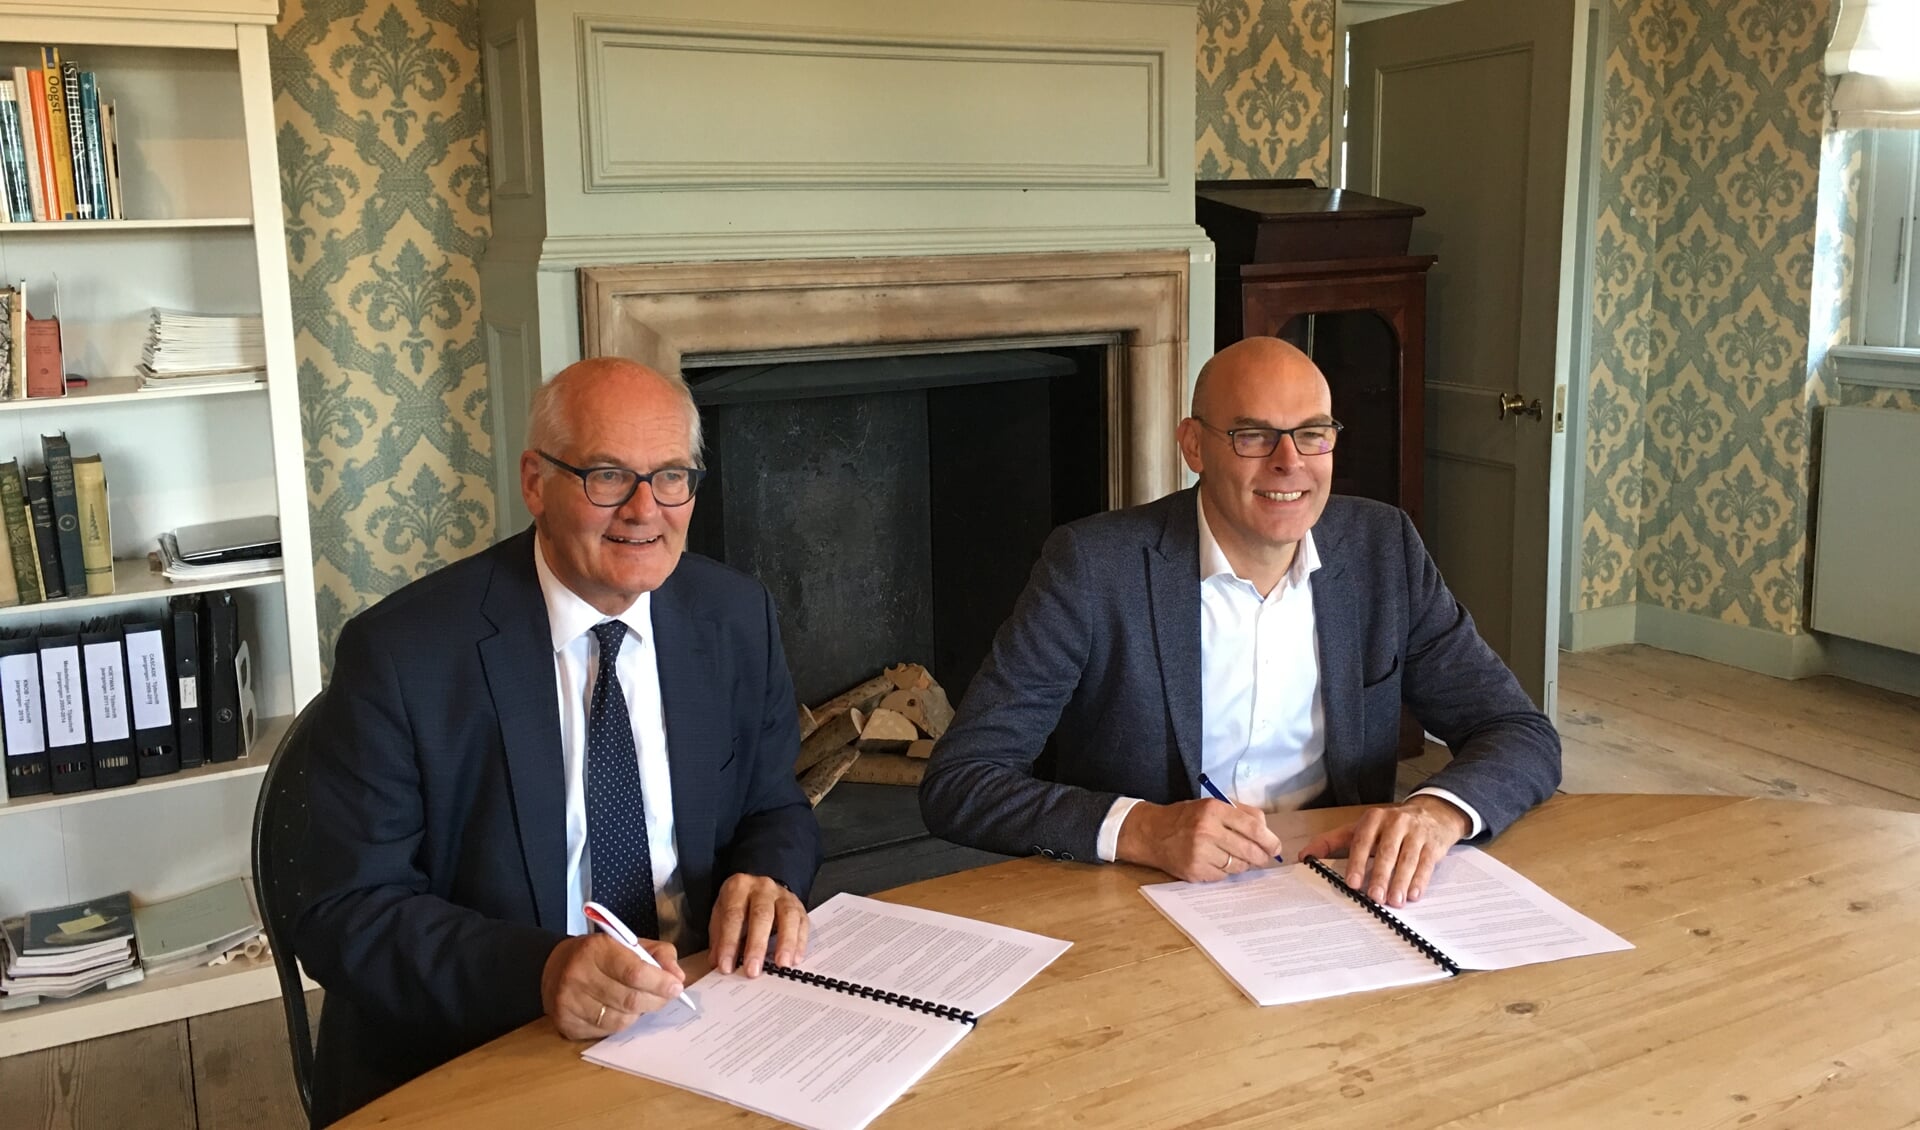 Wethouder Gerrit Boonzaaijer van de gemeente Utrechtse Heuvelrug en Herman Sietsma ondertekenen
de overeenkomst in het Kasteel van Amerongen.